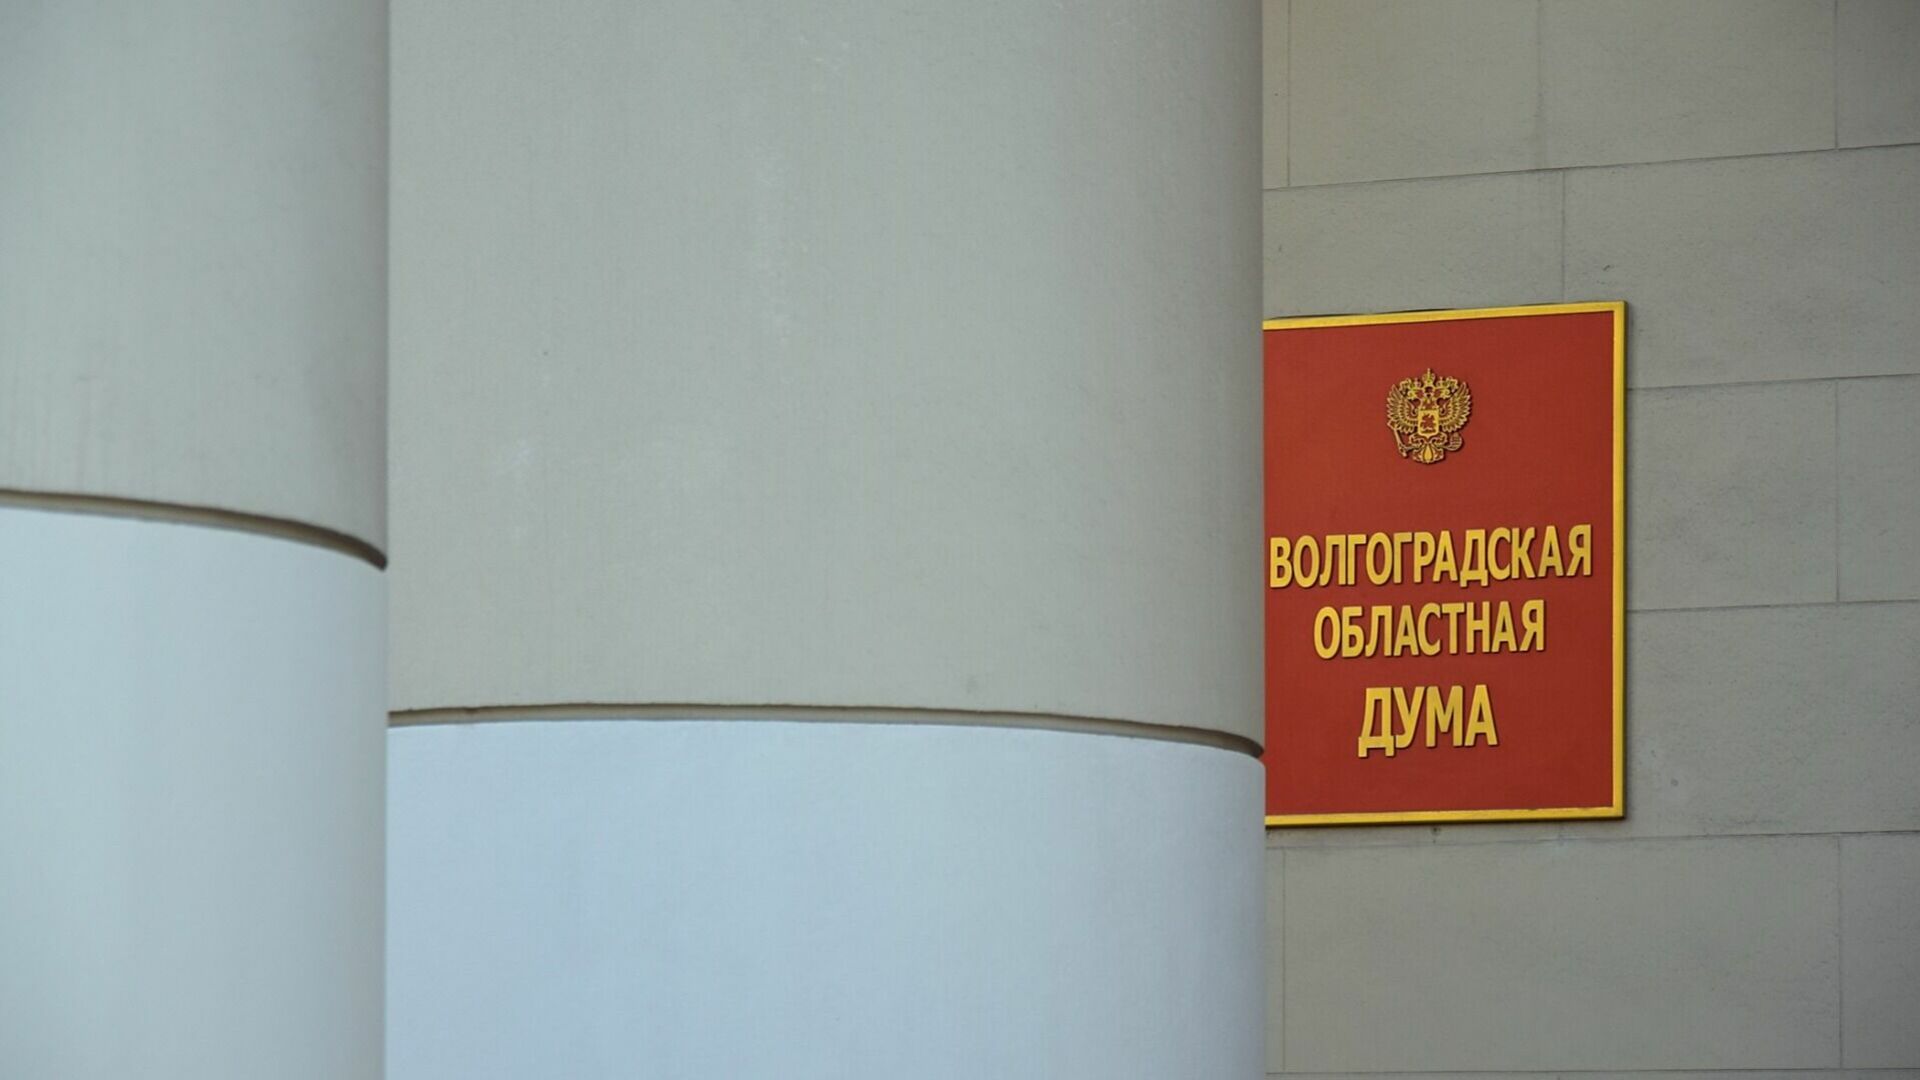 Почетный штандарт губернатора введут в наградную систему в Волгограде